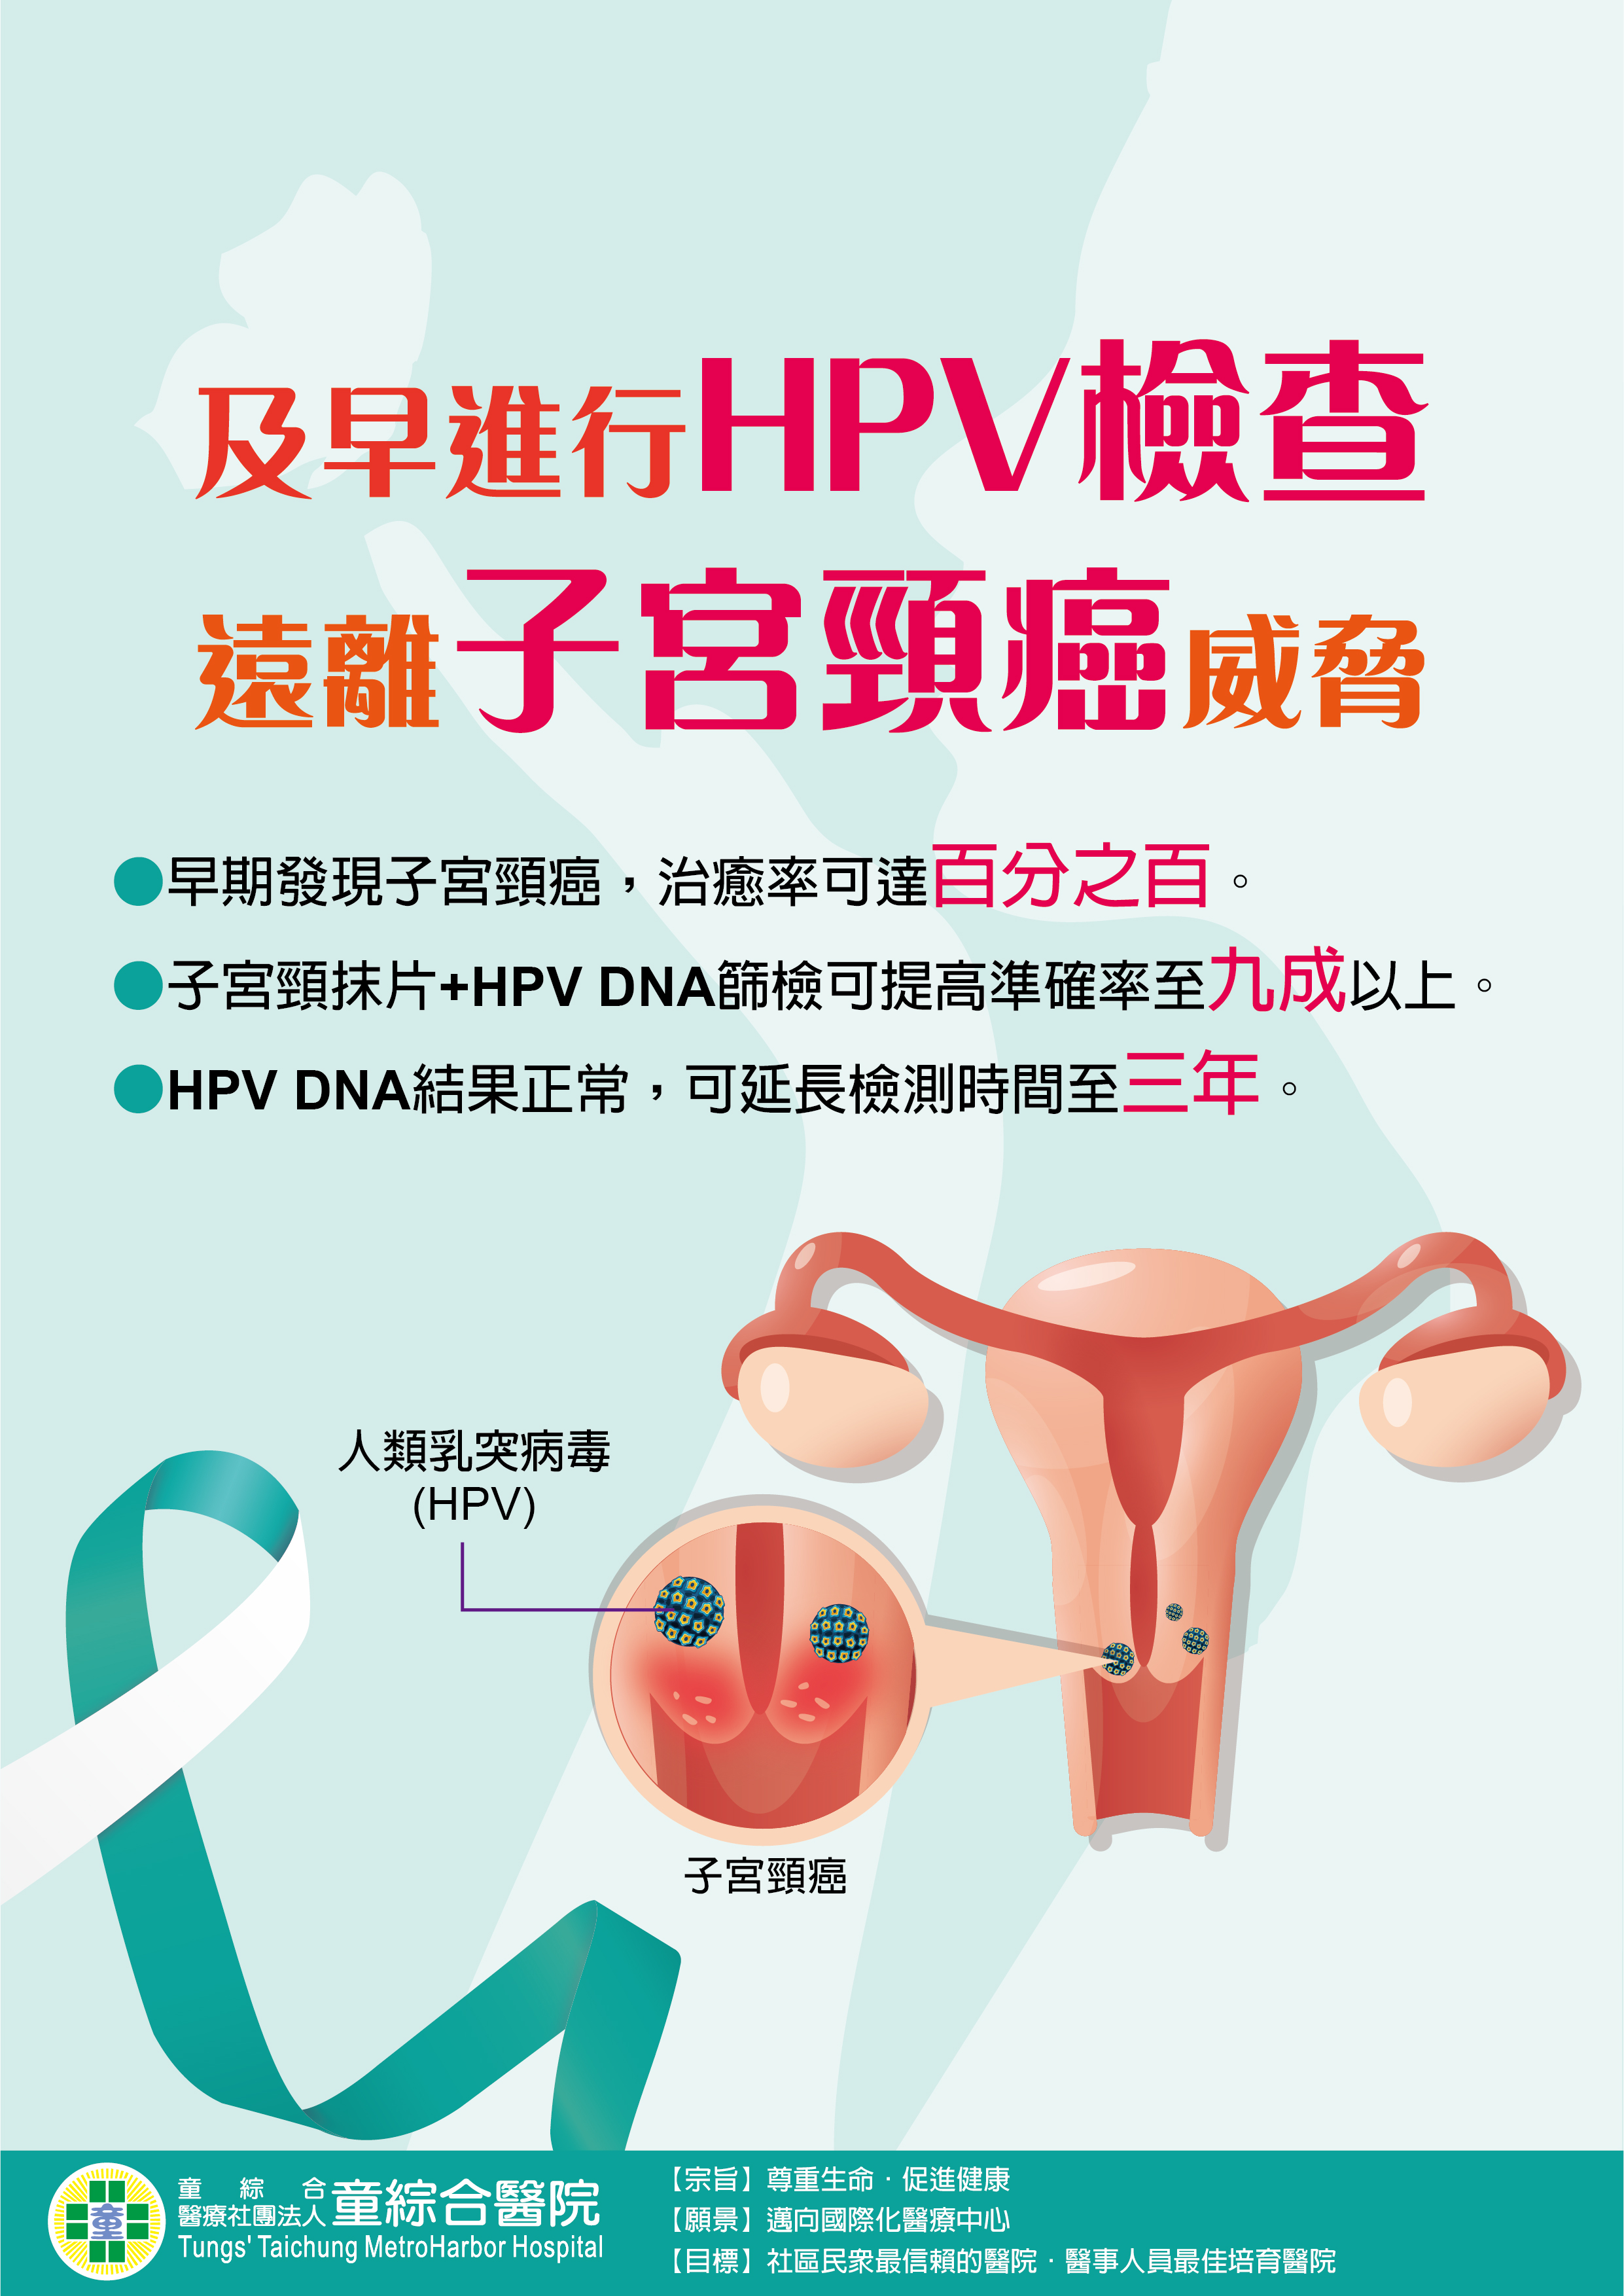 及早進行HPV檢查遠離子宮頸癌威脅